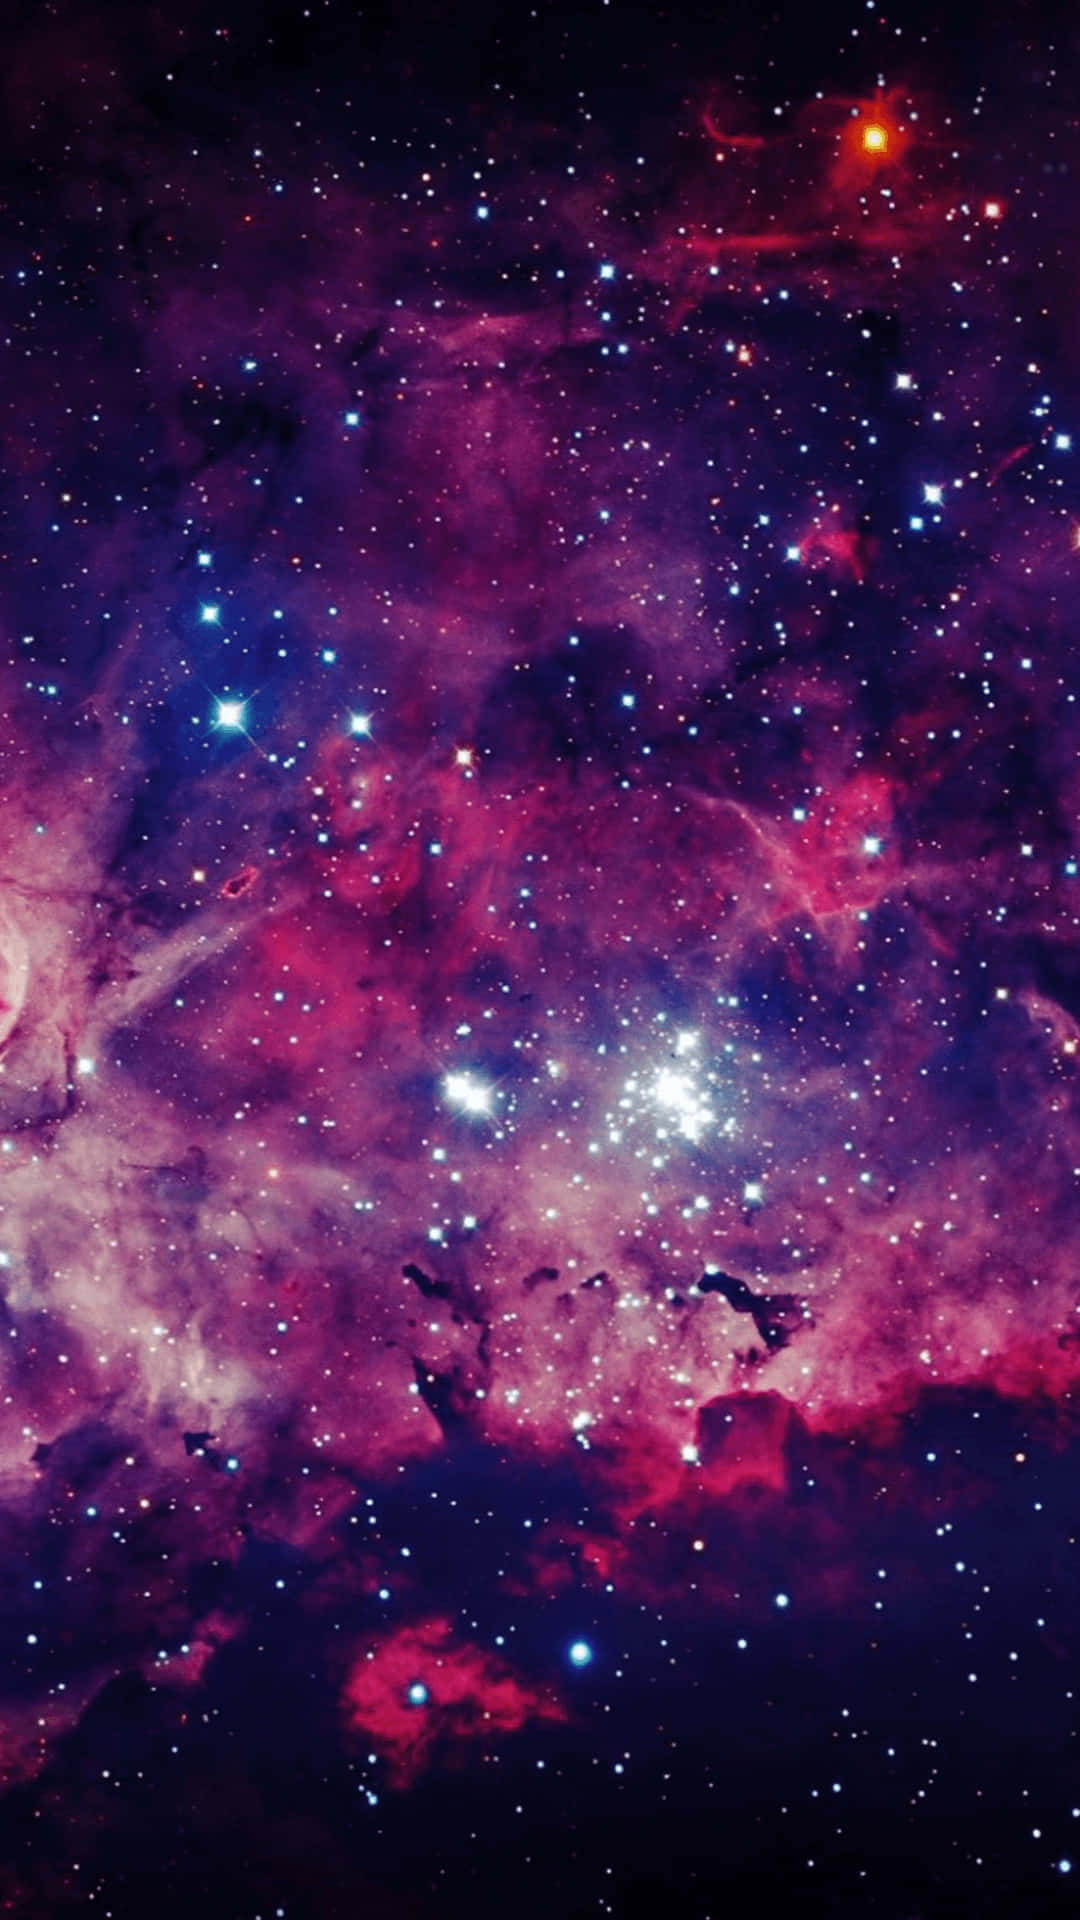 Hintergrundbildeiner Galaktischen Weltraumszene Mit Lila Gaswolken.